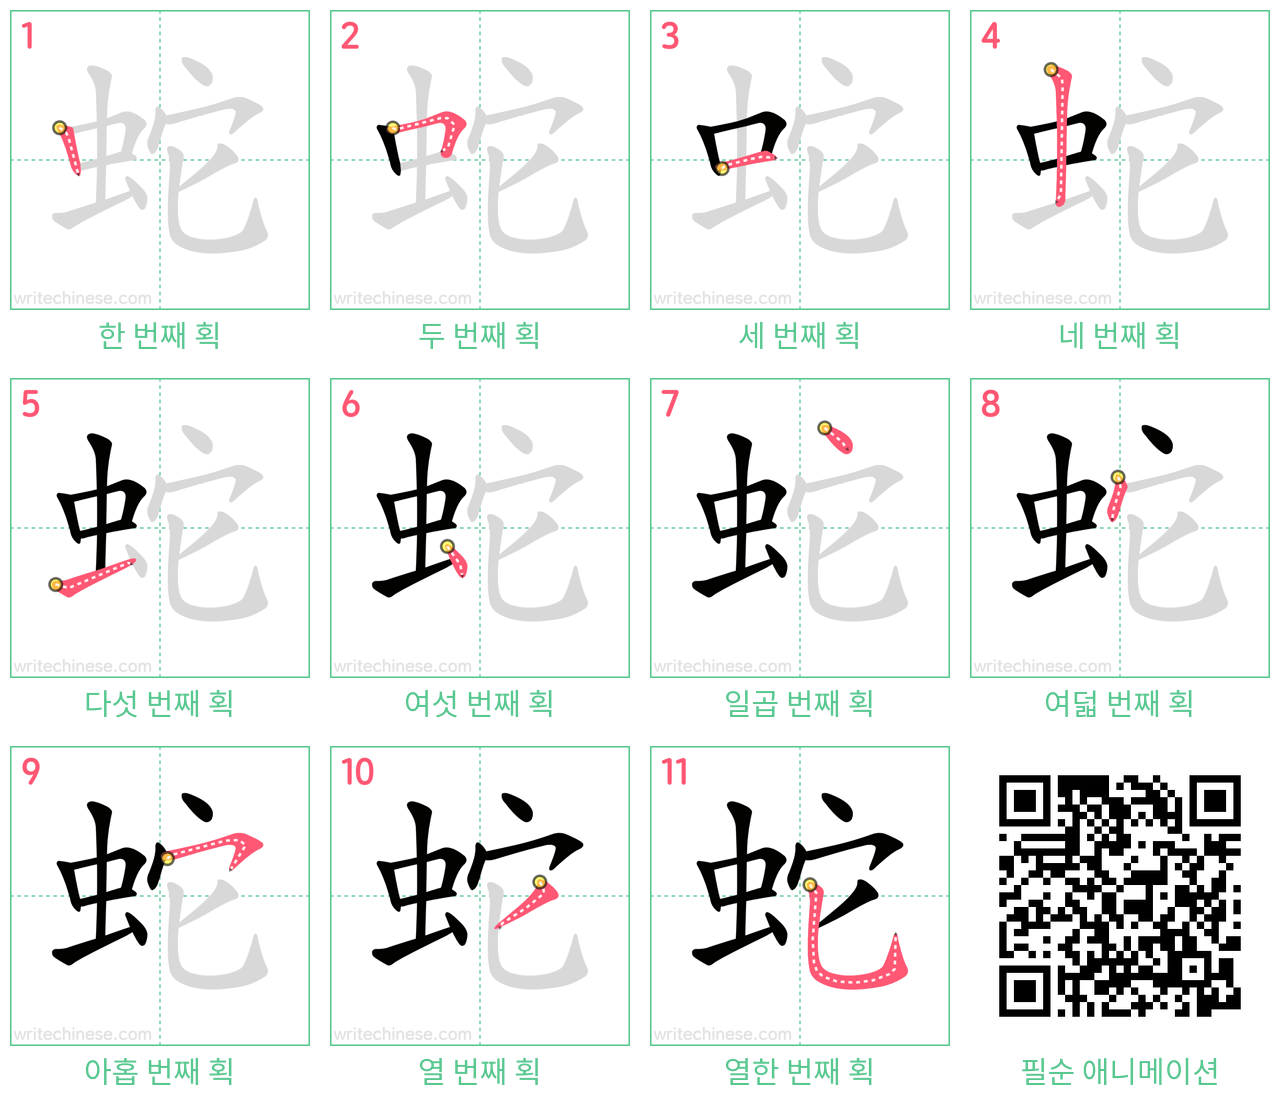 蛇 step-by-step stroke order diagrams